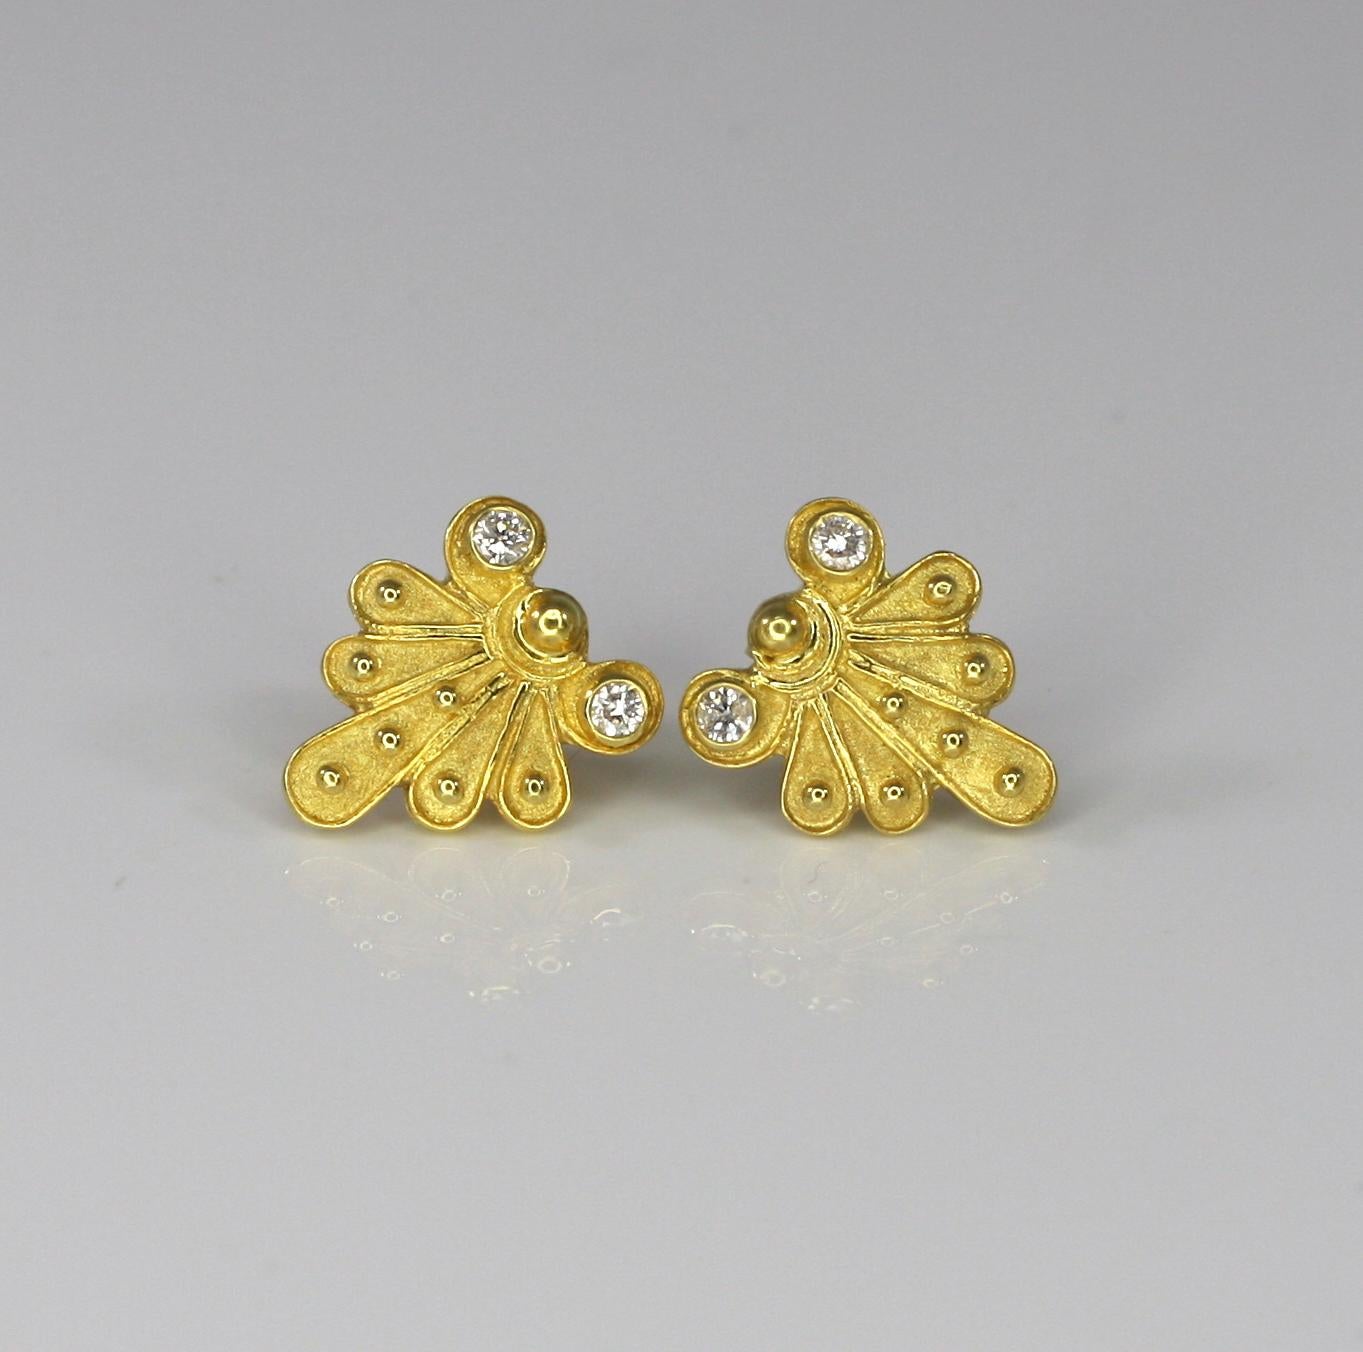 Dieser S.Georgios Designer-Ohrring ist aus 18 Karat Gelbgold und wurde von Hand gefertigt. Die Ohrringe sind mikroskopisch genau mit Granulierung verziert und haben eine einzigartige Samtoptik auf dem Hintergrund. Diese Ohrringe tragen 4 Diamanten